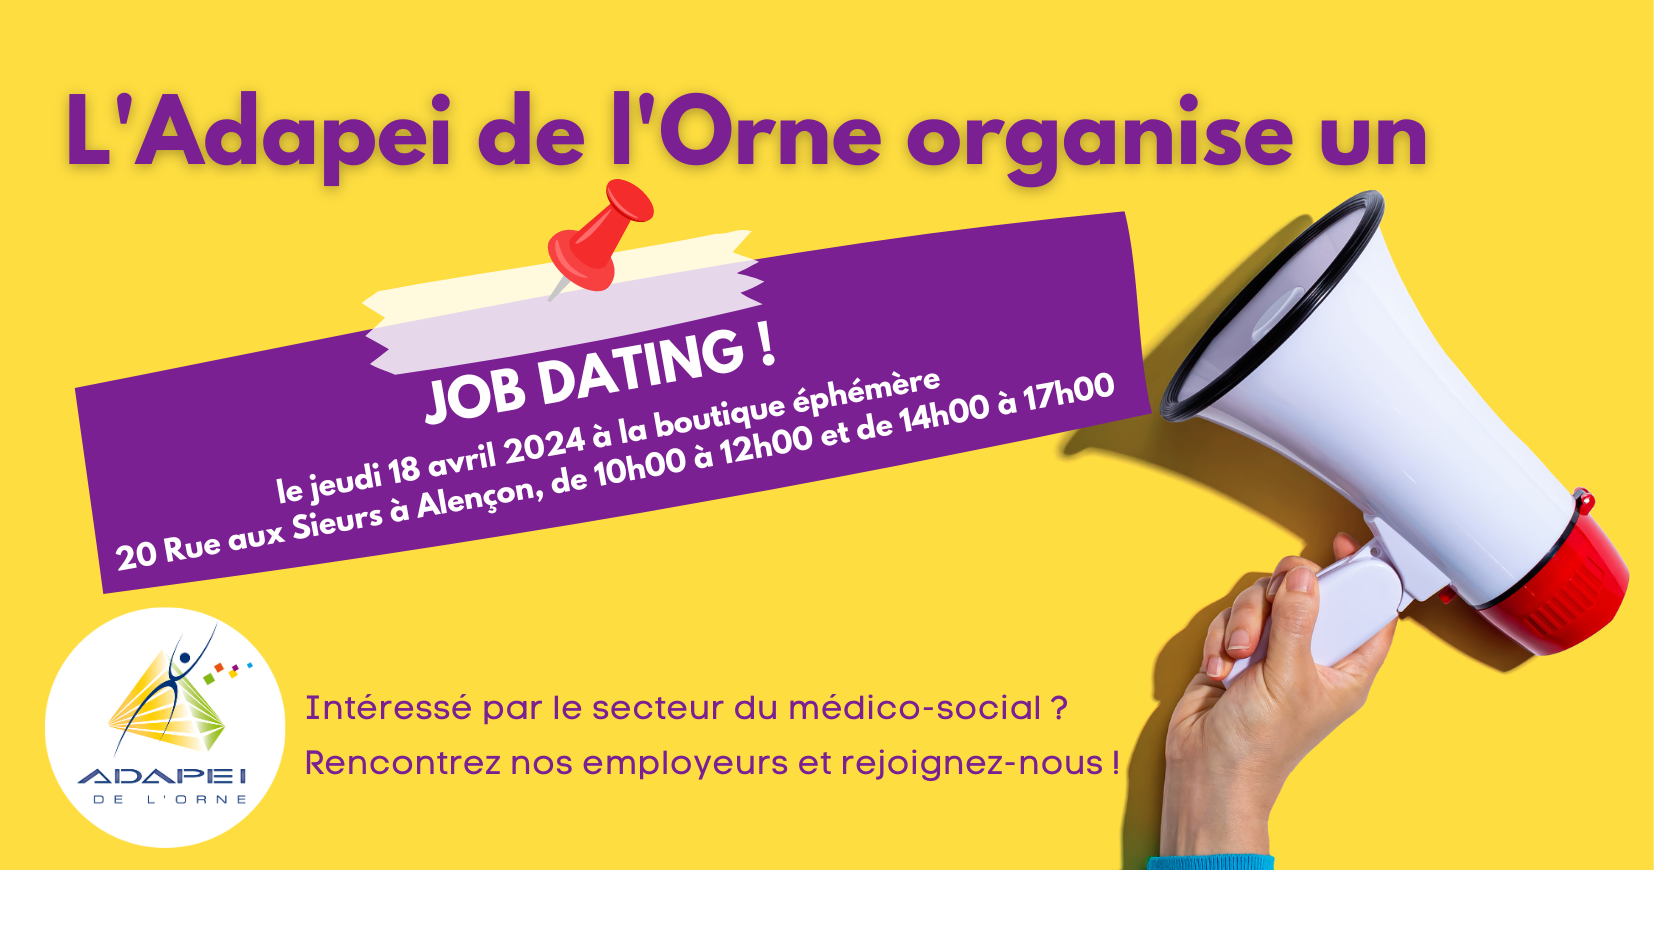 SAVE THE DATE : un job dating organisé par l’Adapei de l’Orne à la boutique éphémère le jeudi 18 avril 2024